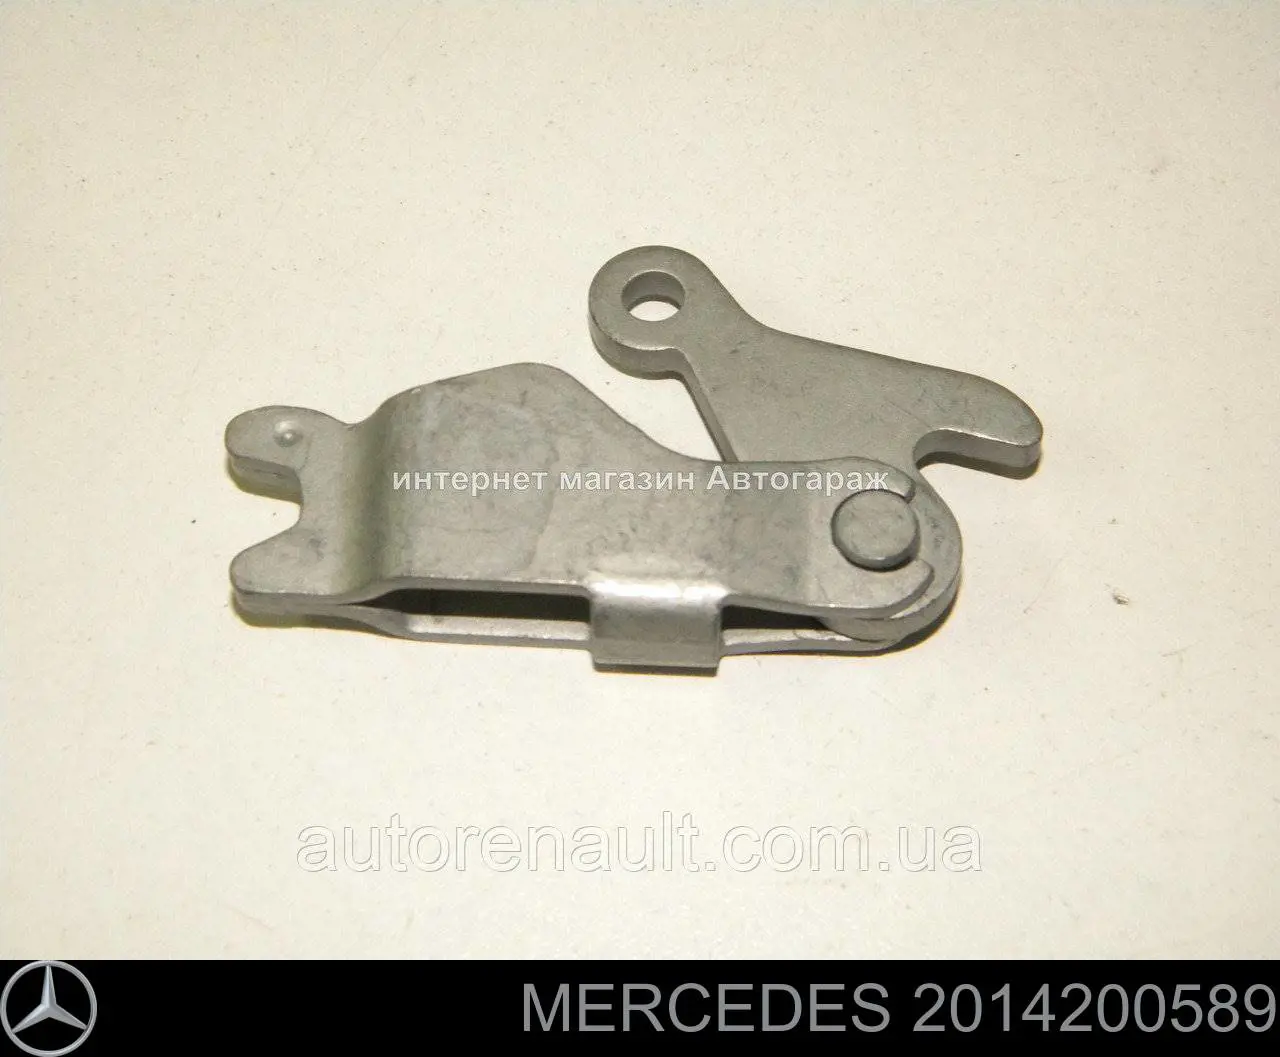 2014200589 Mercedes разжимной механизм колодок стояночного тормоза